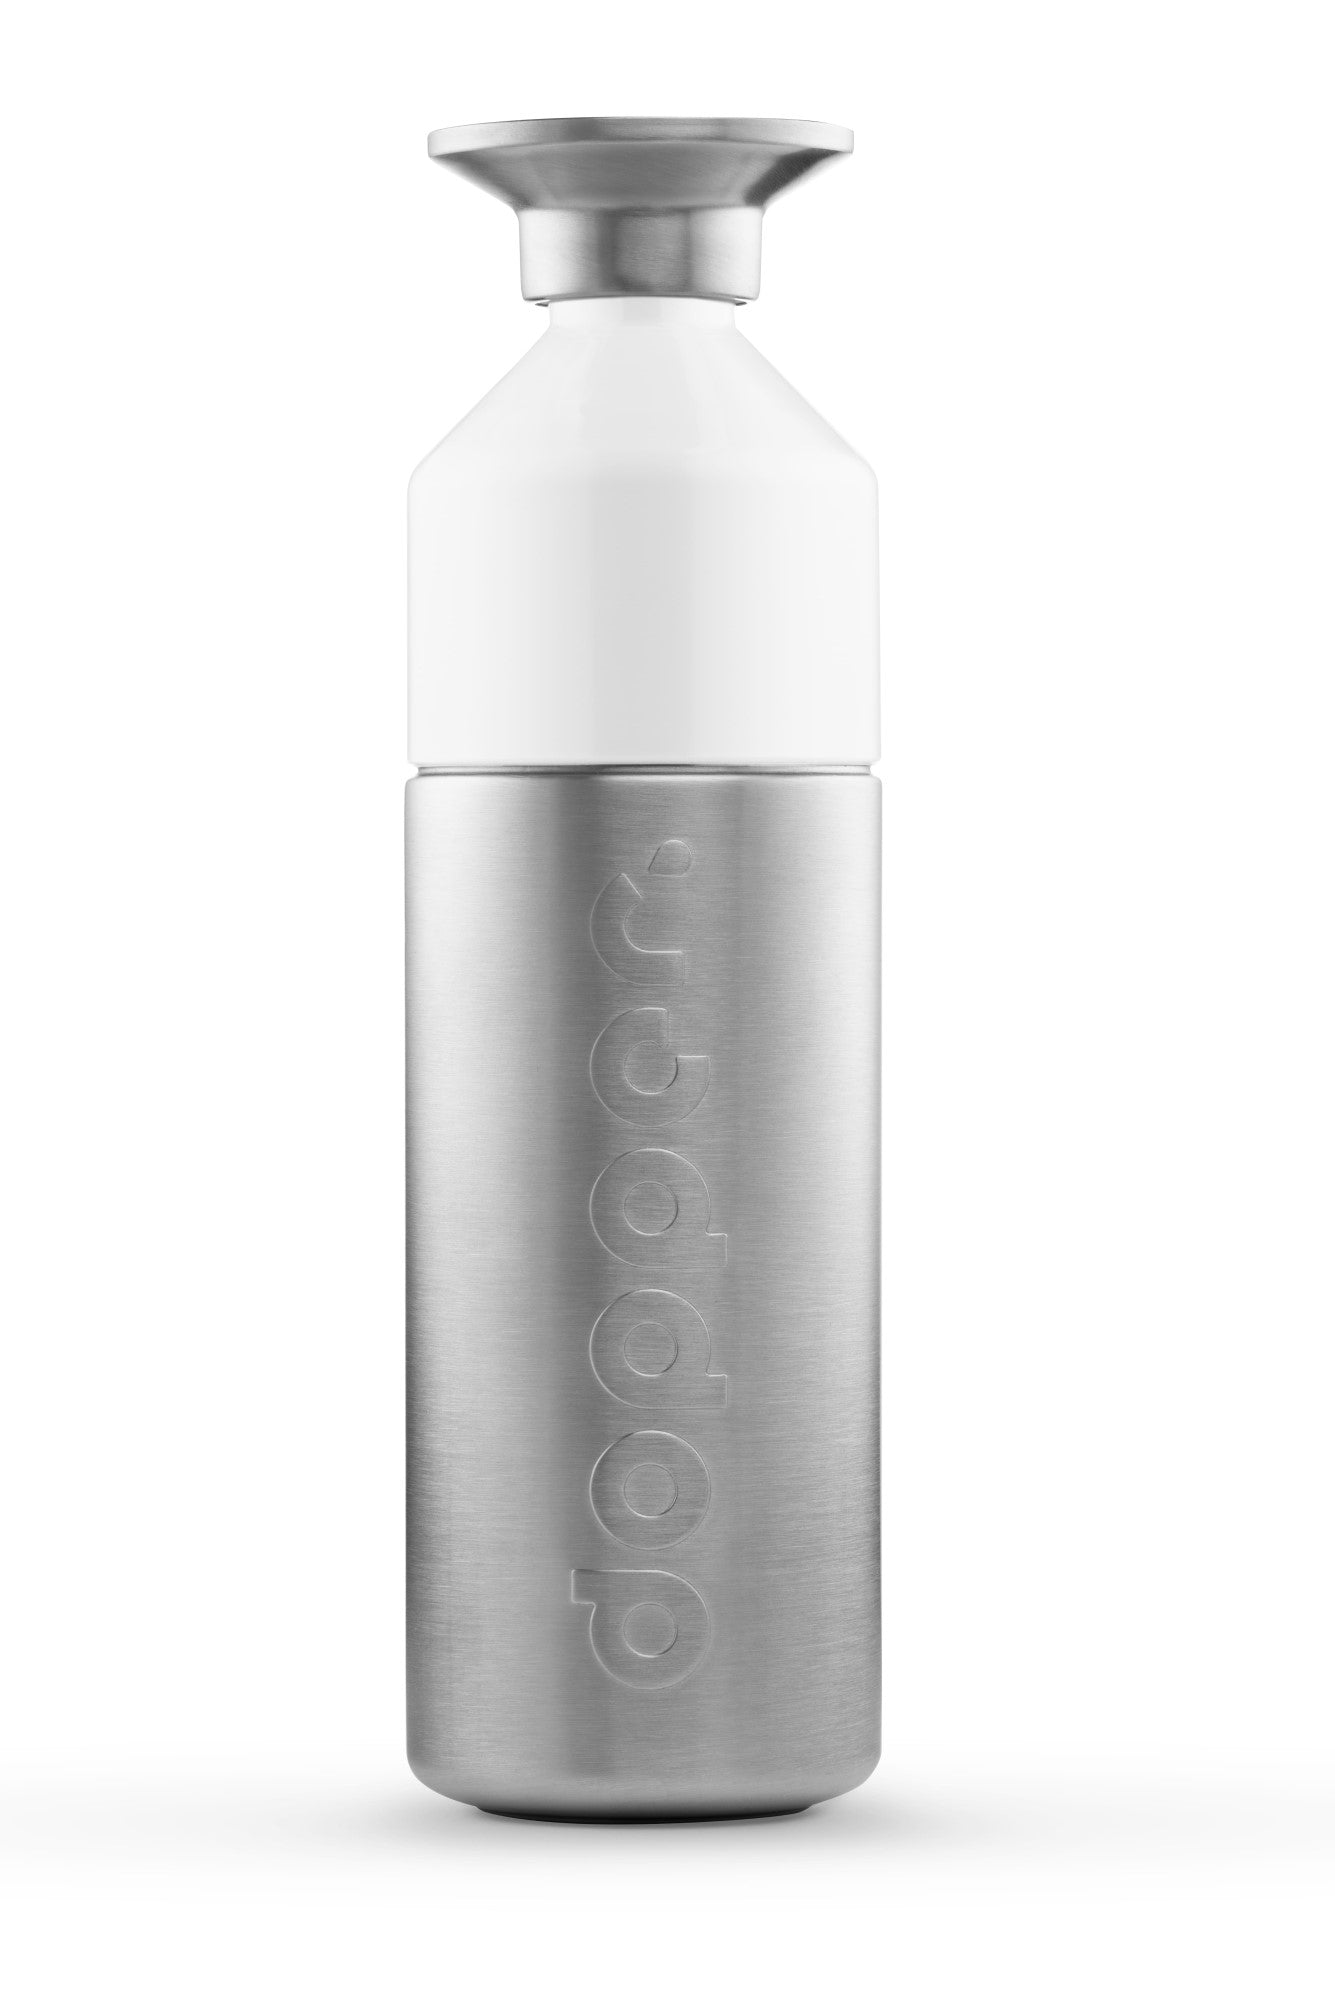 Dopper Reusable Stainless Steel Travel Bottle 800ml